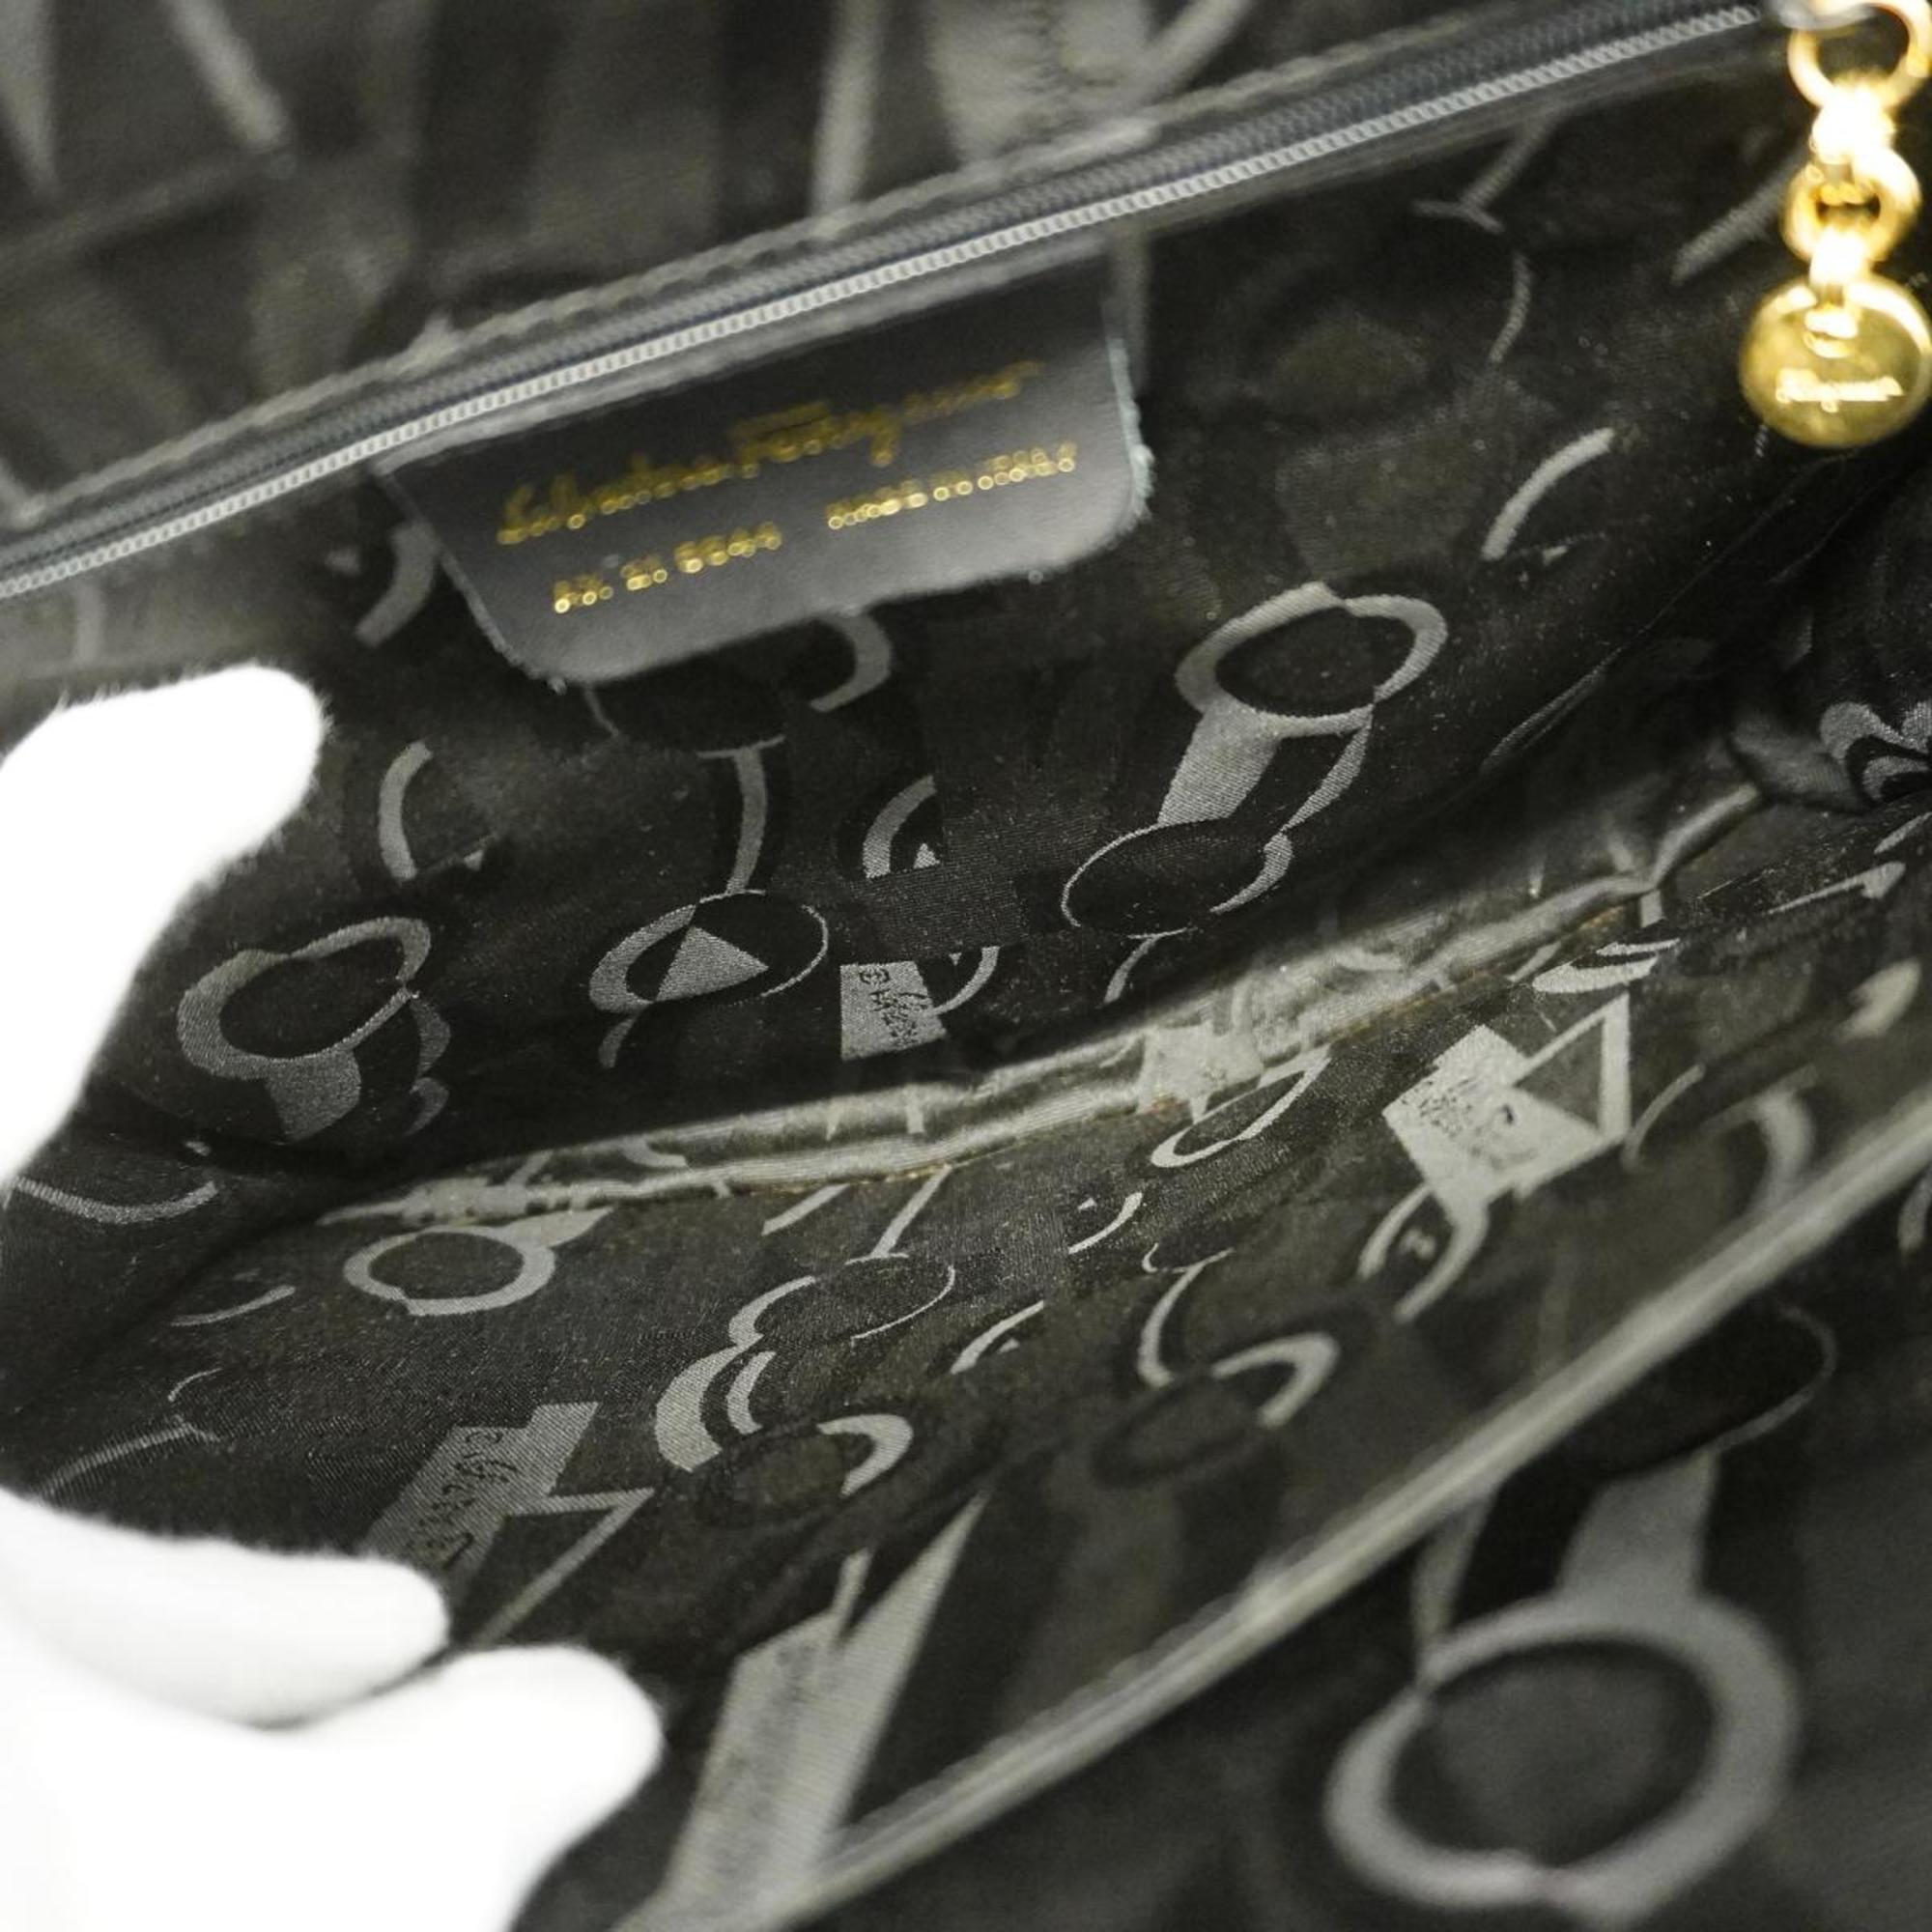 Salvatore Ferragamo handbag leather black ladies